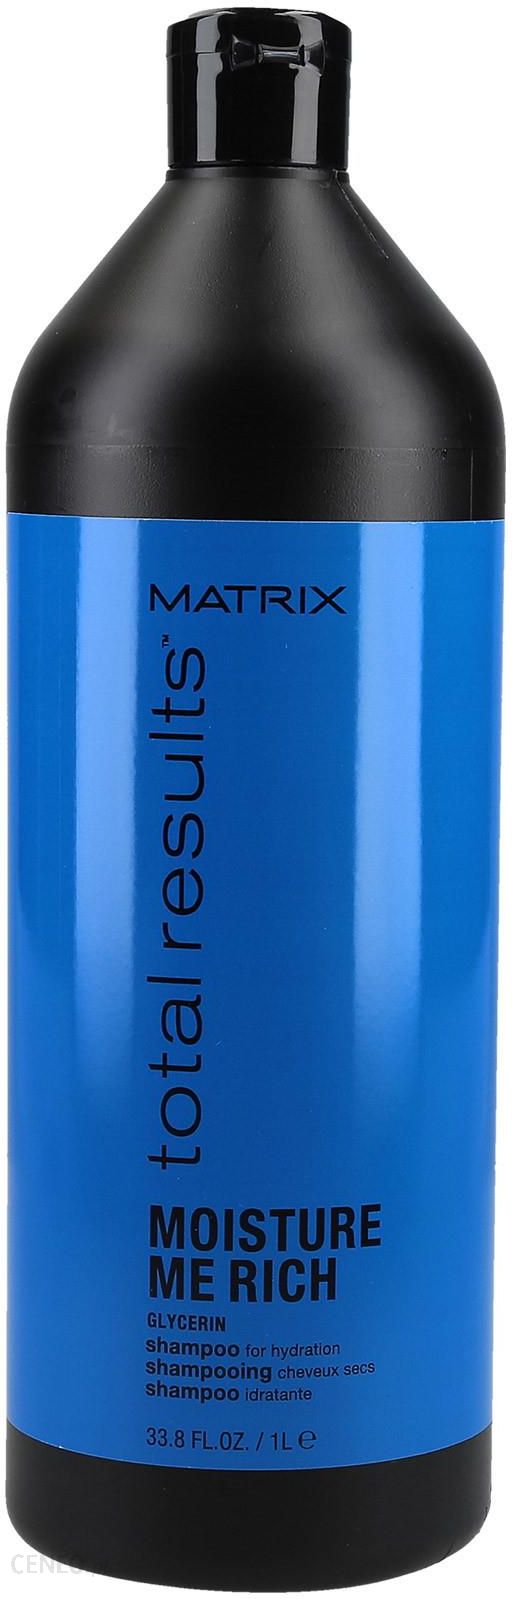 matrix nawilżający szampon do włosów moisture